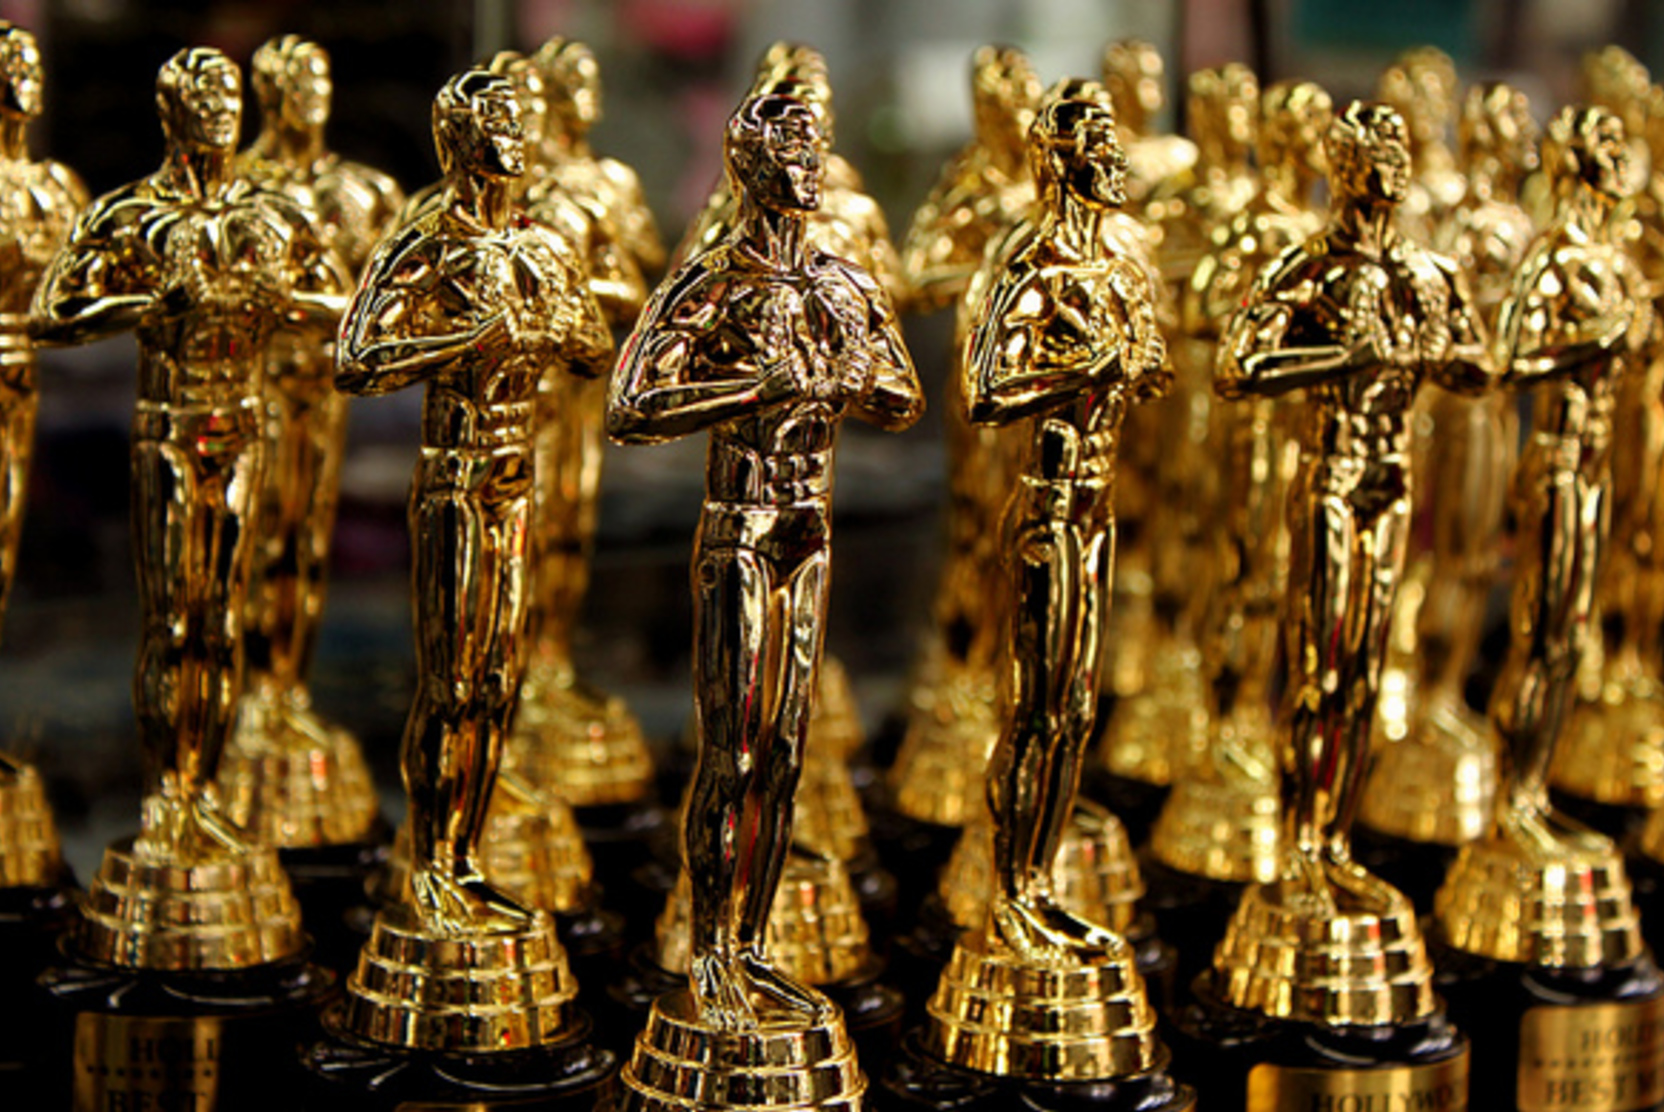 Российский фильм «Дылда» вошел в лонг-лист премии «Оскар»